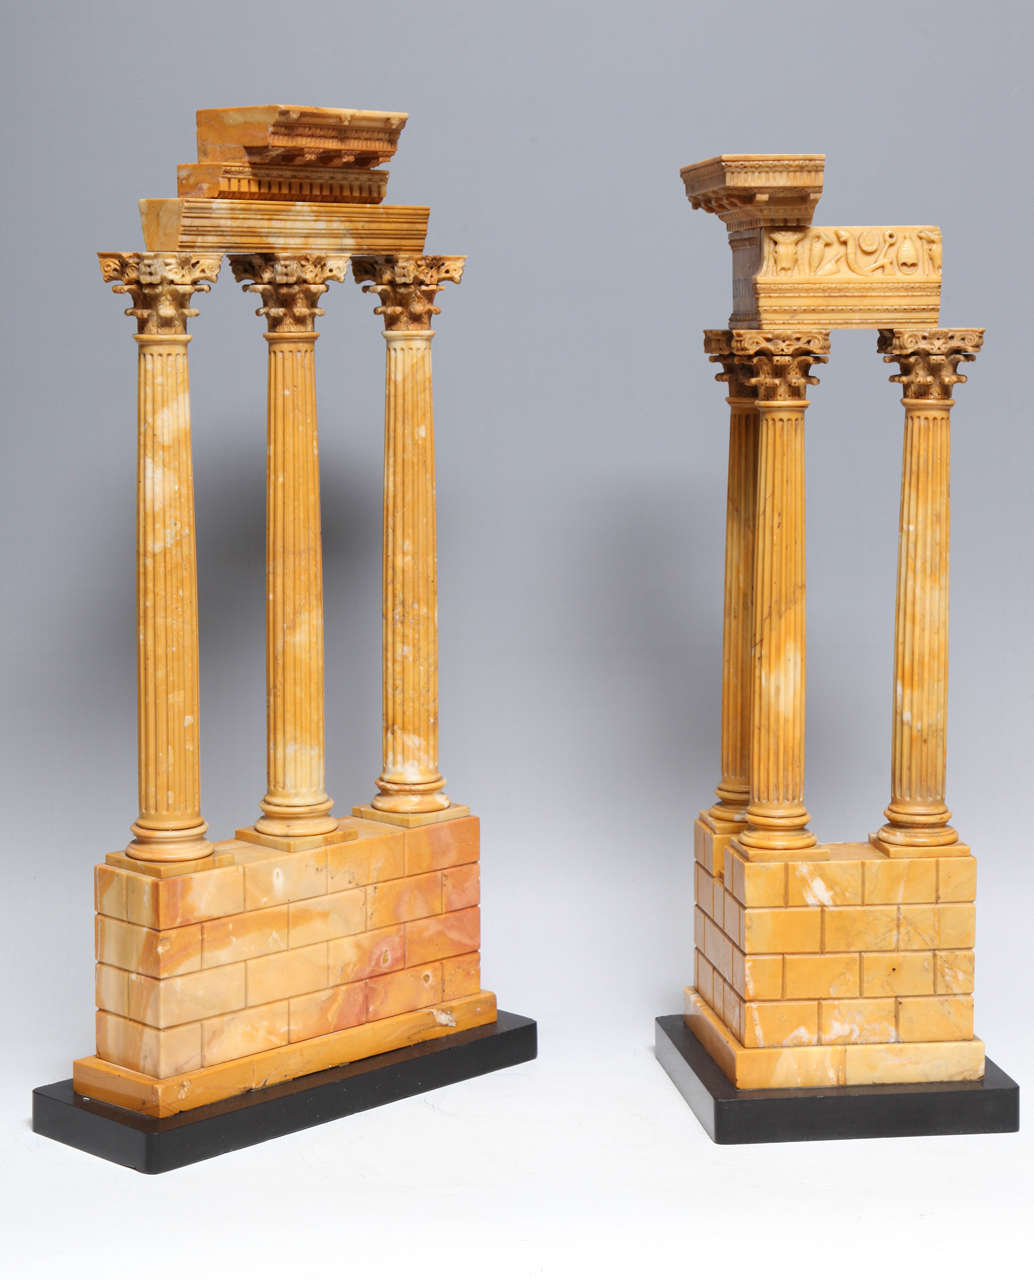 Paire de maquettes en marbre de Sienne du temple de Castor et Pollux et du temple de Vespasien, début 1800, Italie.

Aux XVIIIe et XIXe siècles, l'éducation d'un gentleman n'était pas considérée comme complète tant qu'il n'avait pas fait le tour